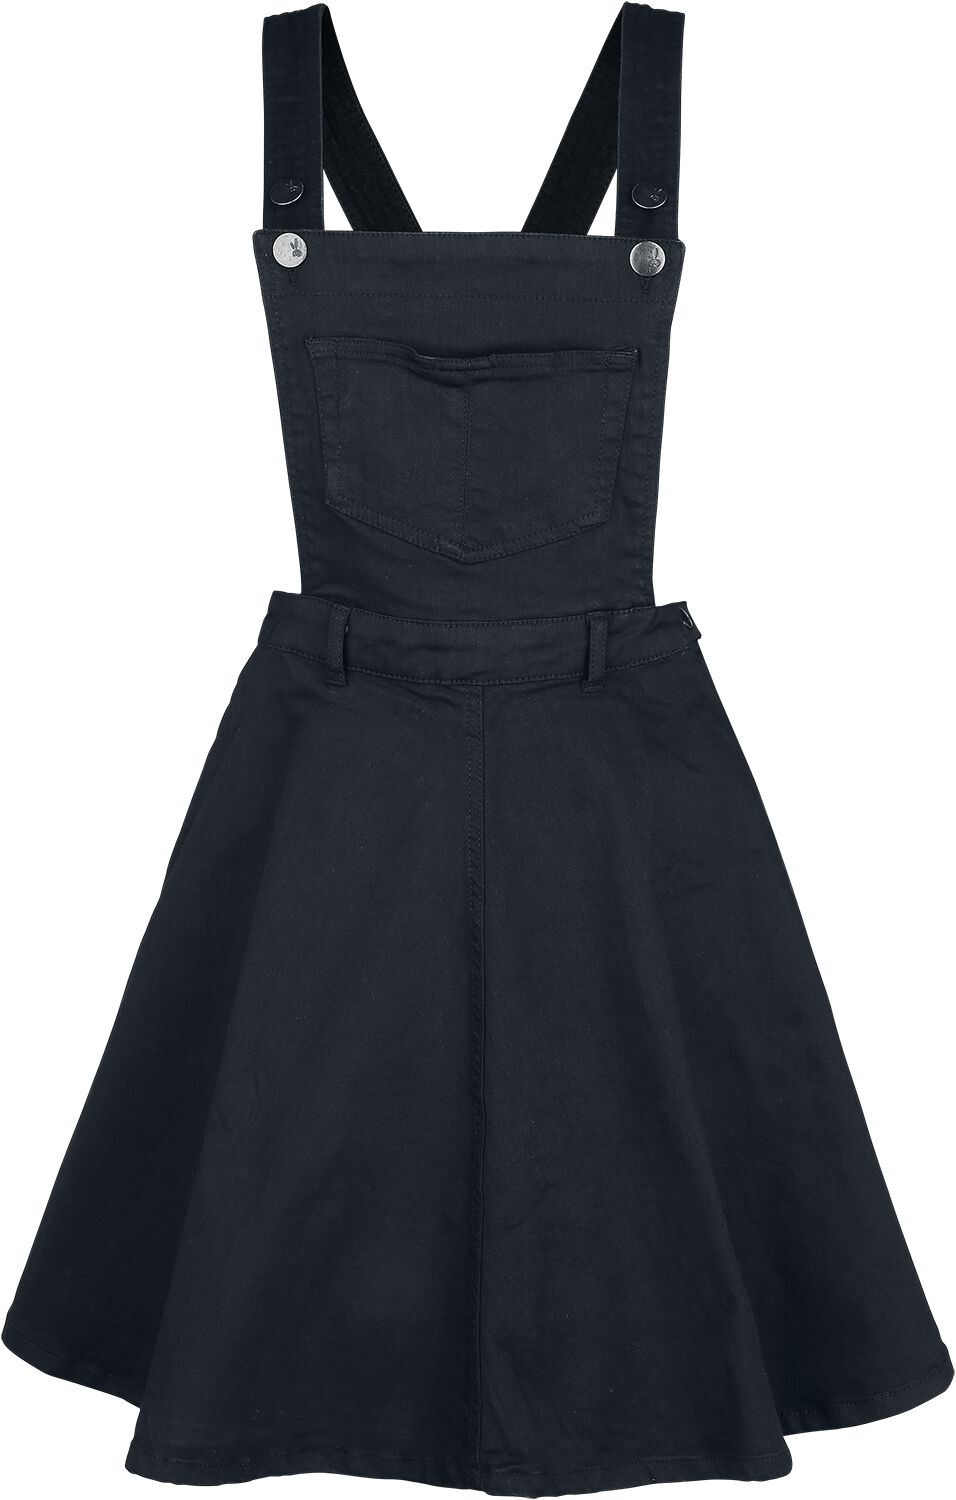 Hell Bunny - Rockabilly Kleid knielang - Dakota Pinafore Dress - XS bis 4XL - für Damen - Größe 4XL - schwarz von hell bunny